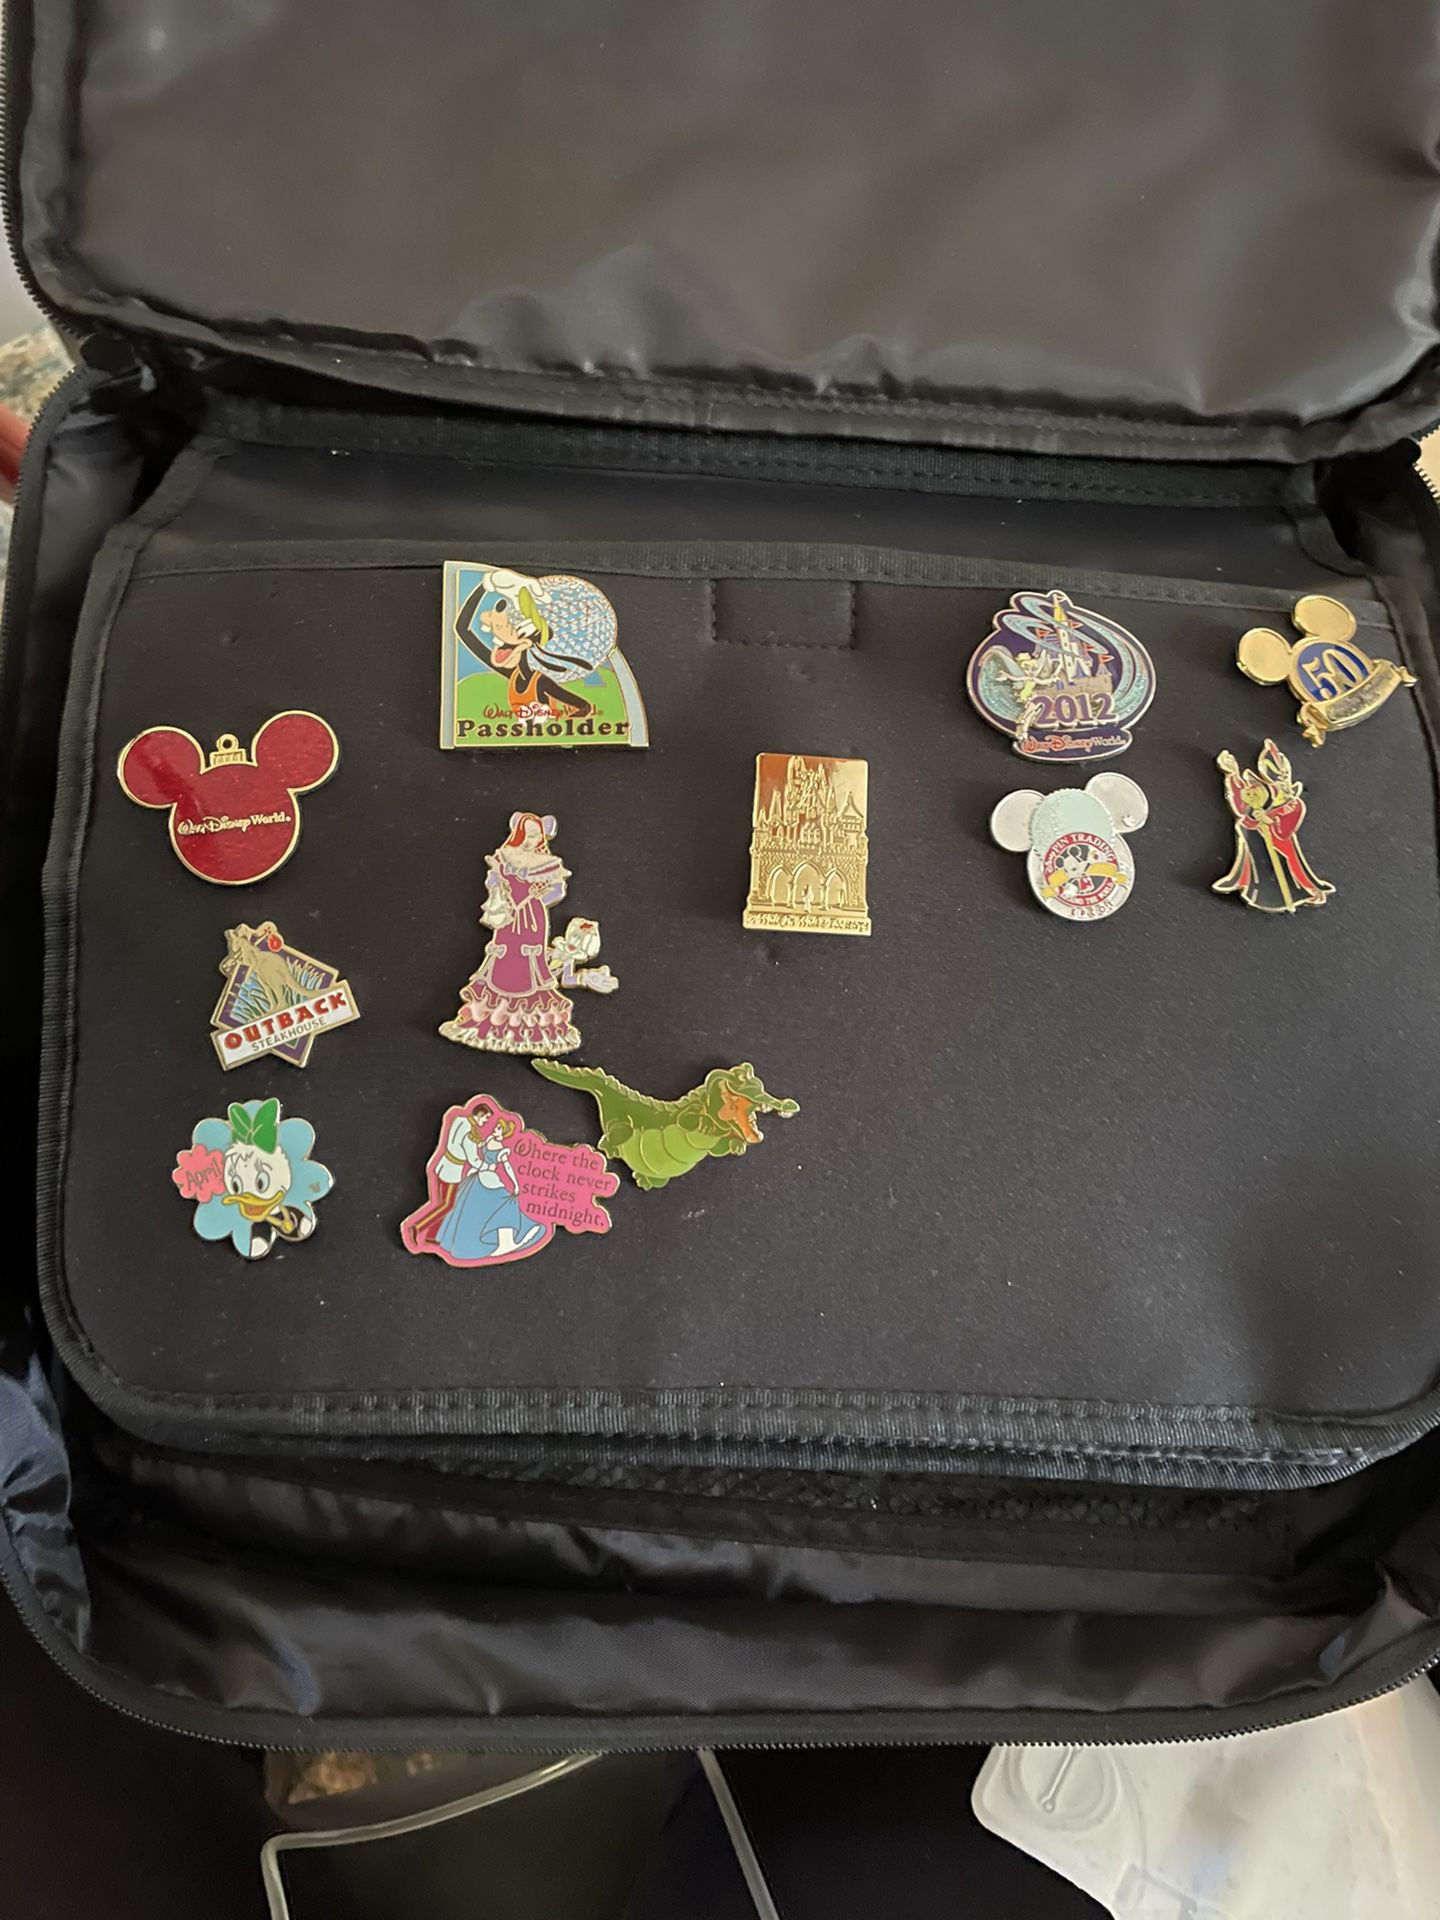 Disney Parks Pin Trading Bag And Pins